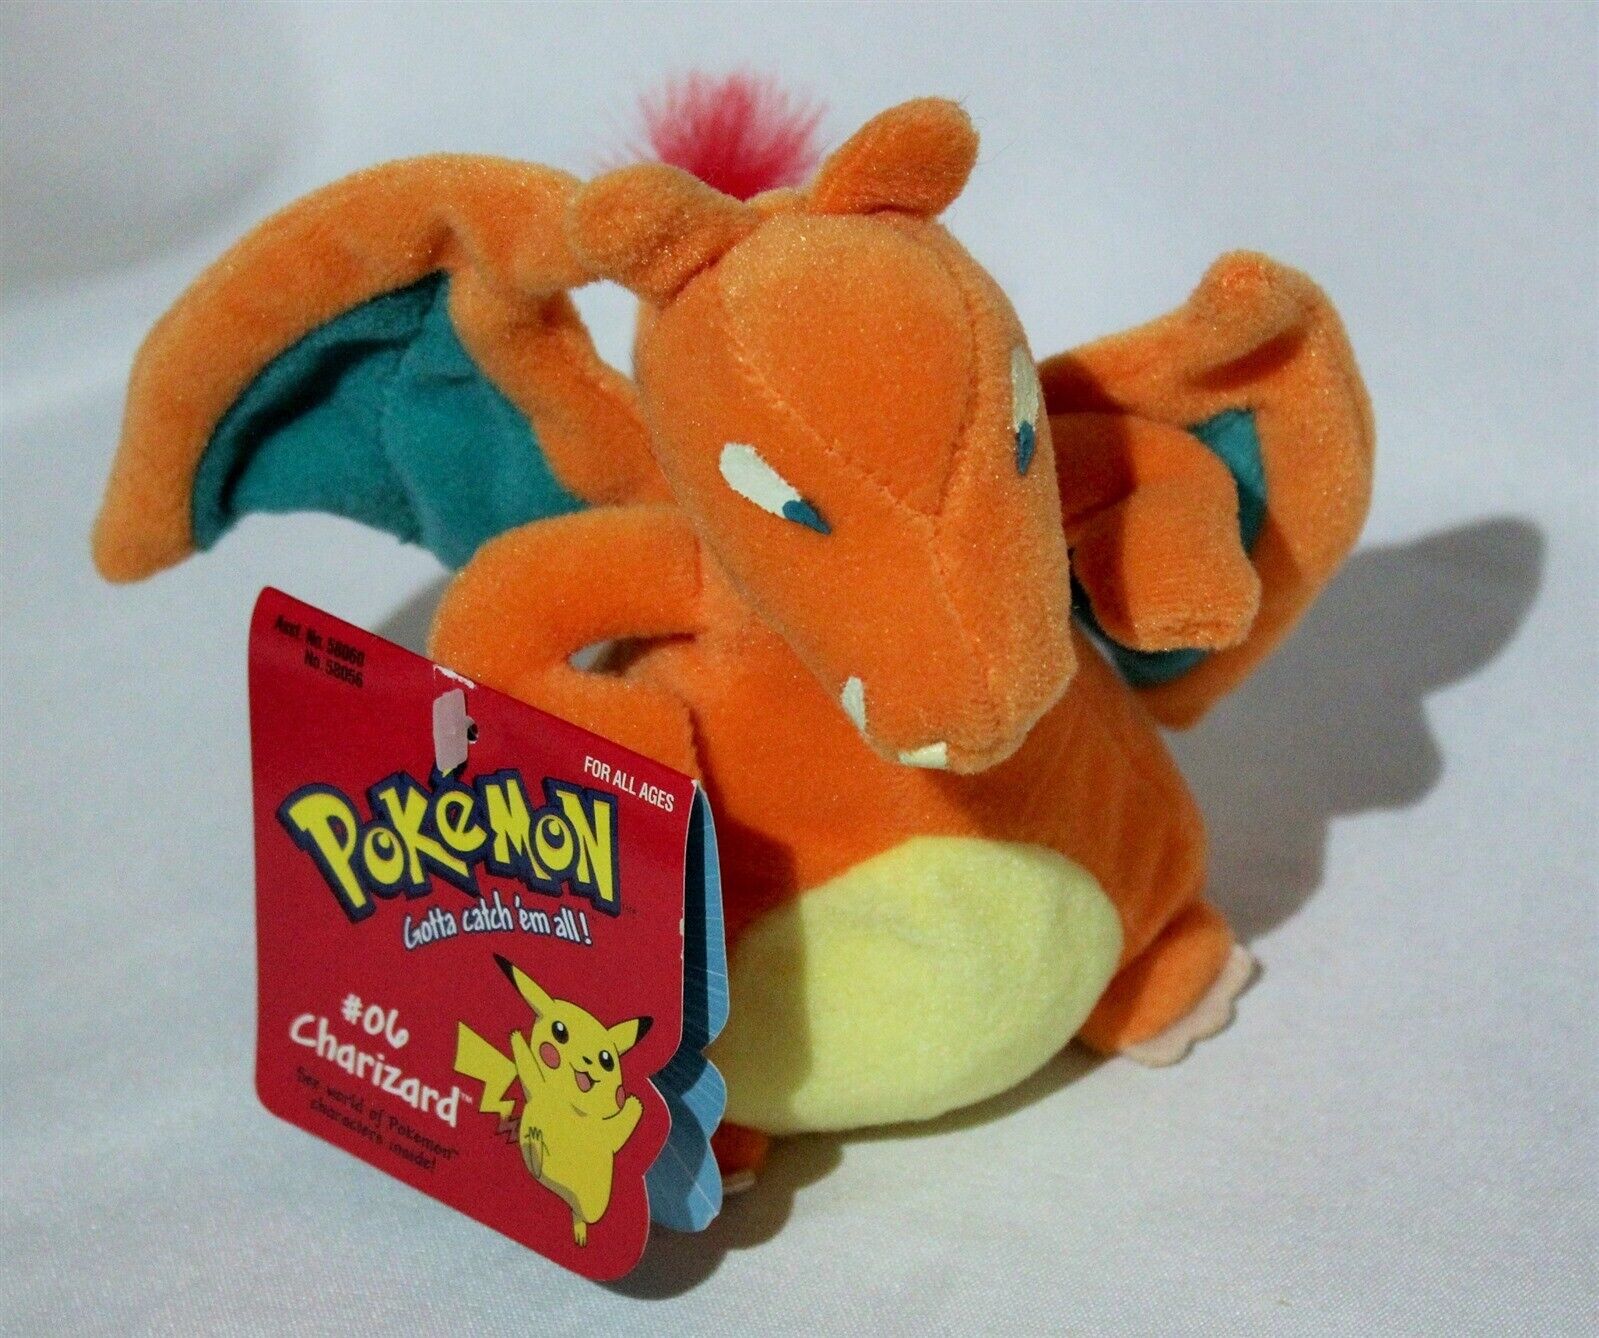 NWT Pokemon Charizard Plush Beanie #06 Authentic Nintendo Licensed 1998 Toy